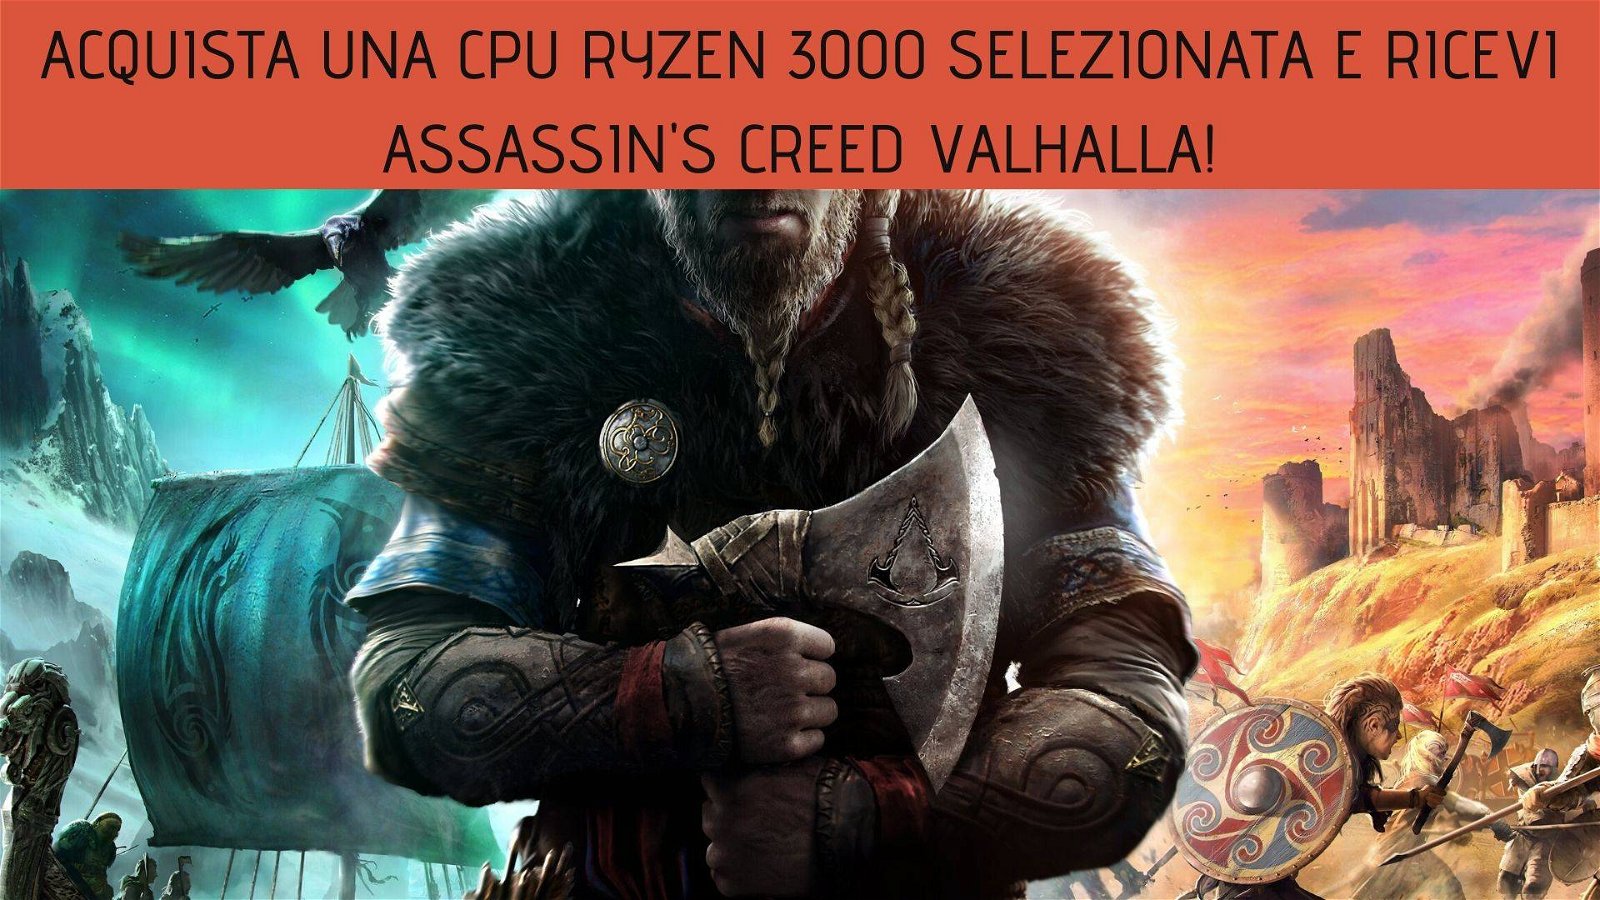 Immagine di Acquista una CPU Ryzen 3000 selezionata e ricevi Assassin's Creed Valhalla!